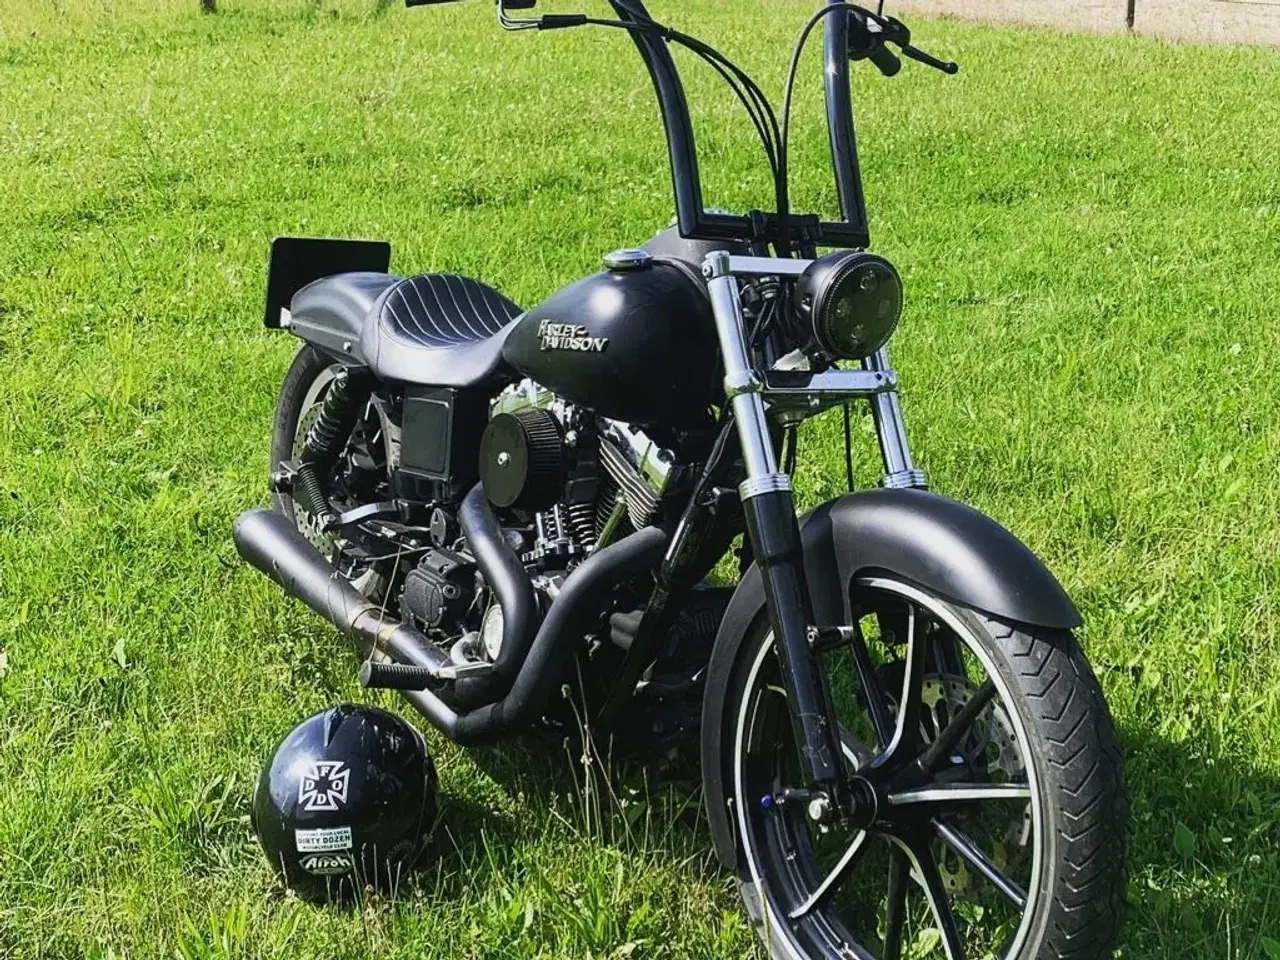 Billede 2 - Harley Davidson dyna